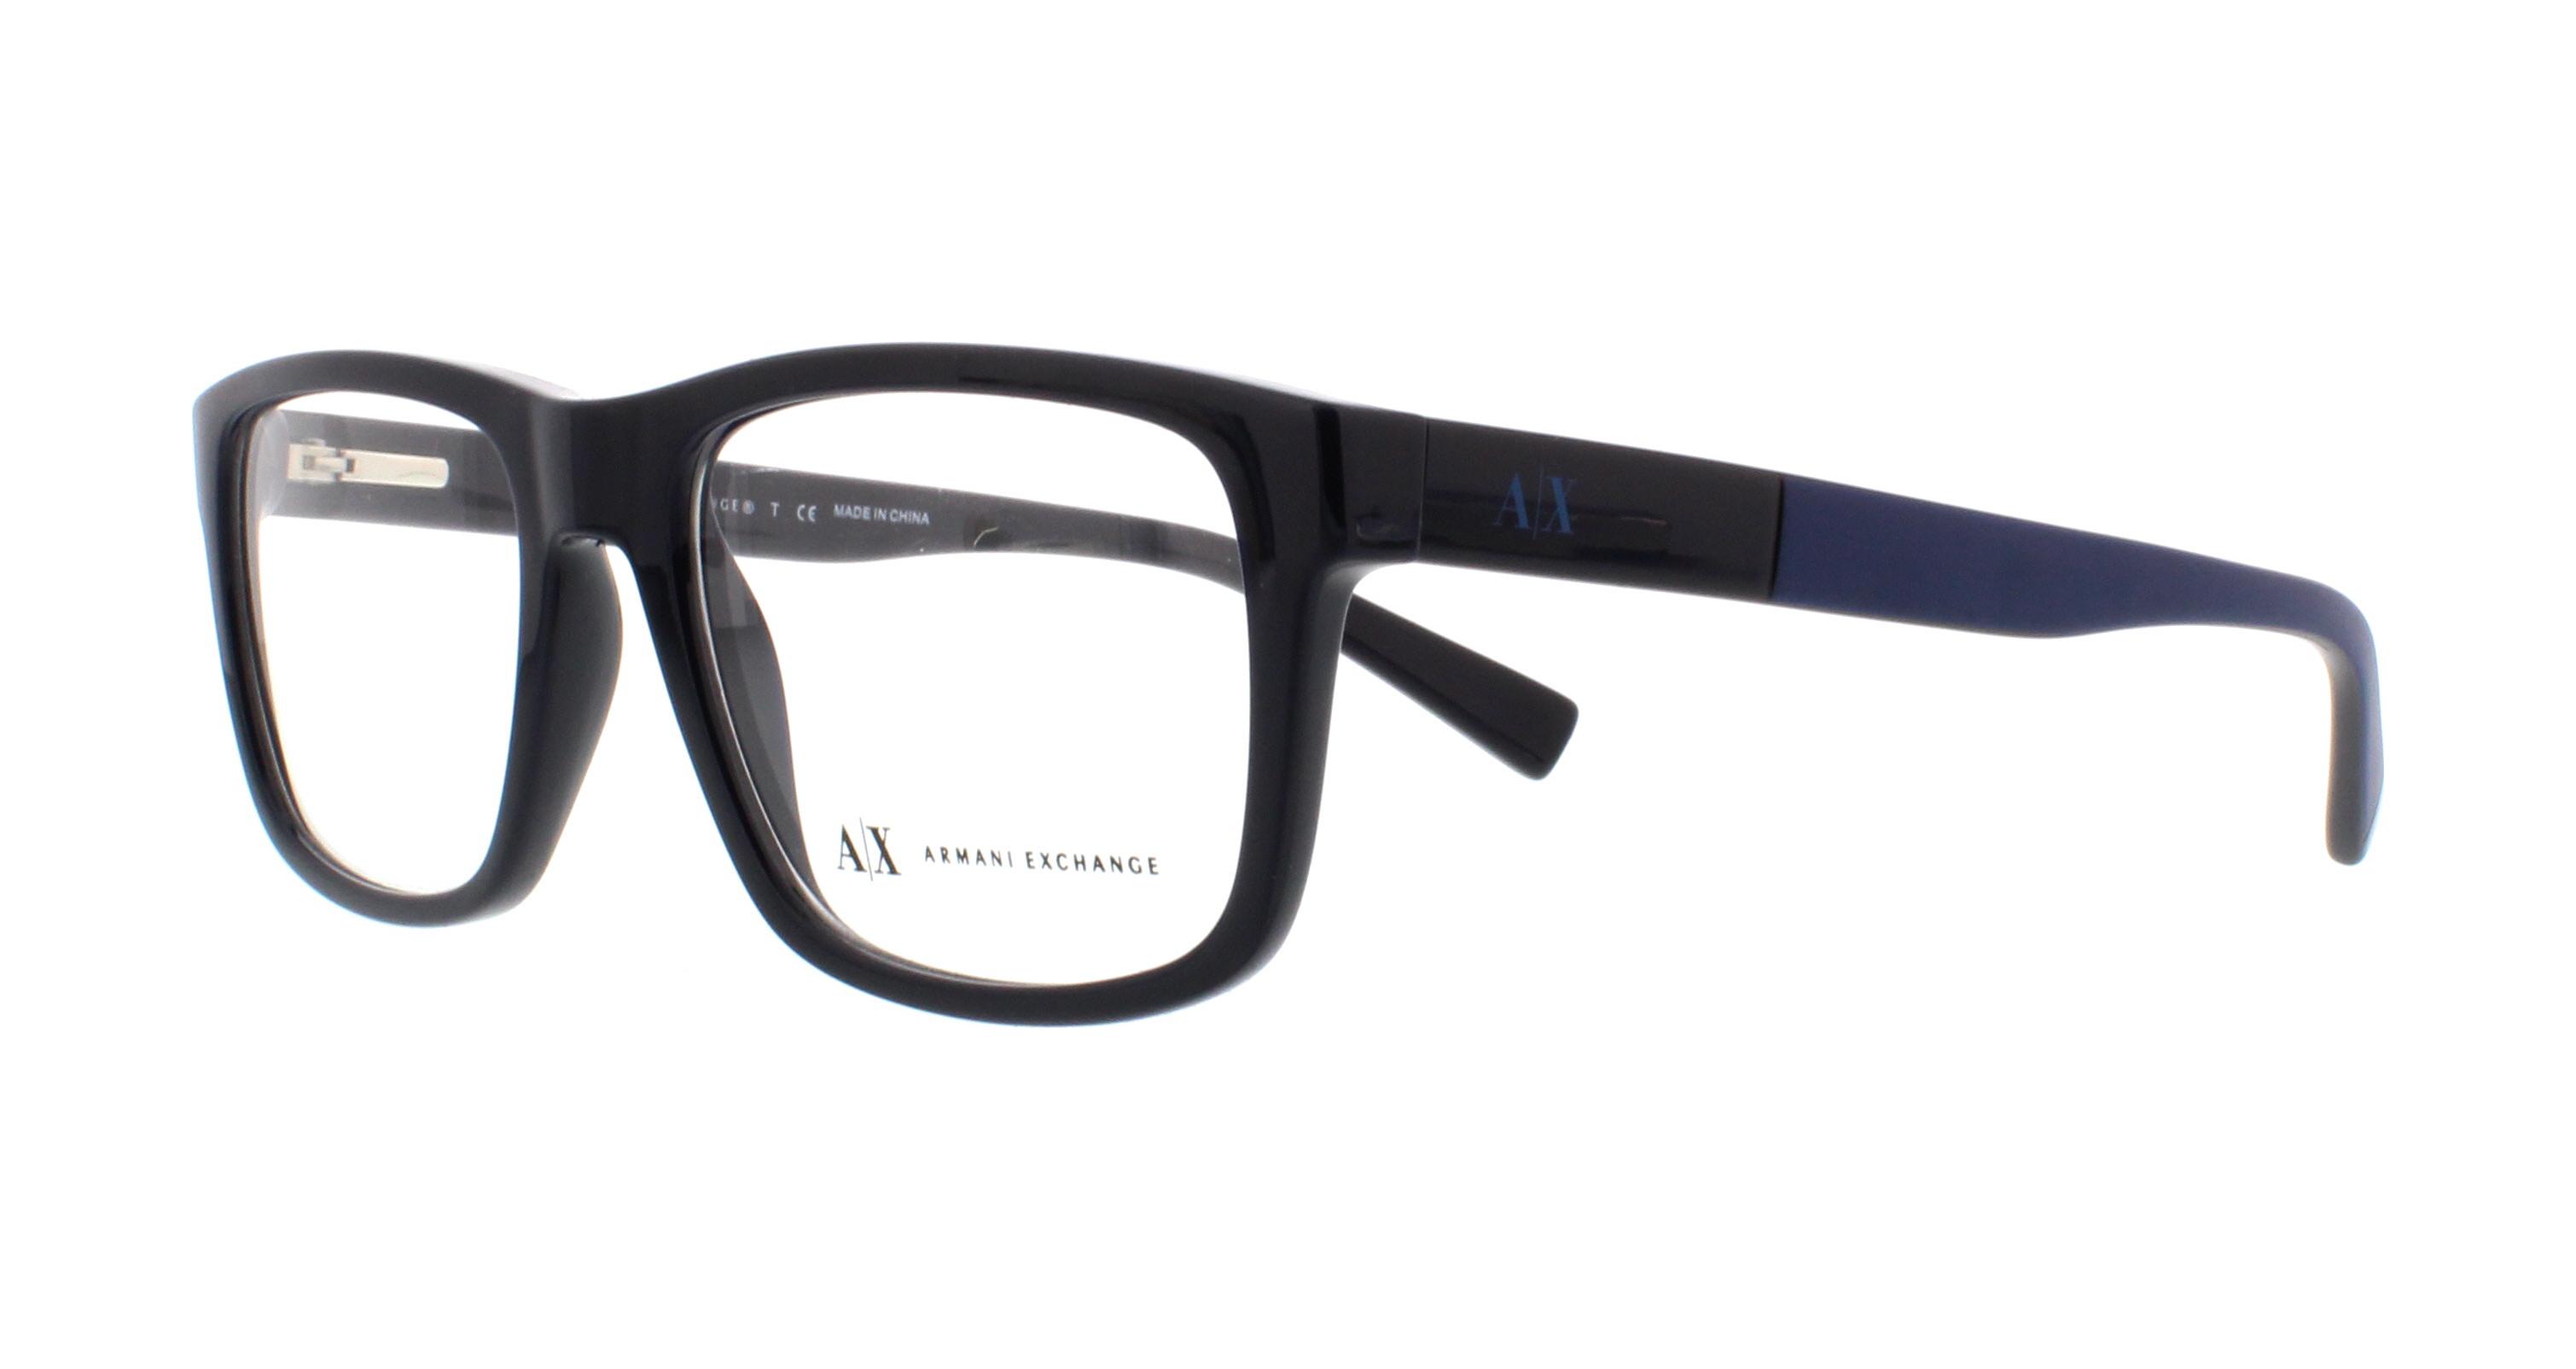 Designer Frames Eyeglasses Exchange Outlet. AX3025 Armani